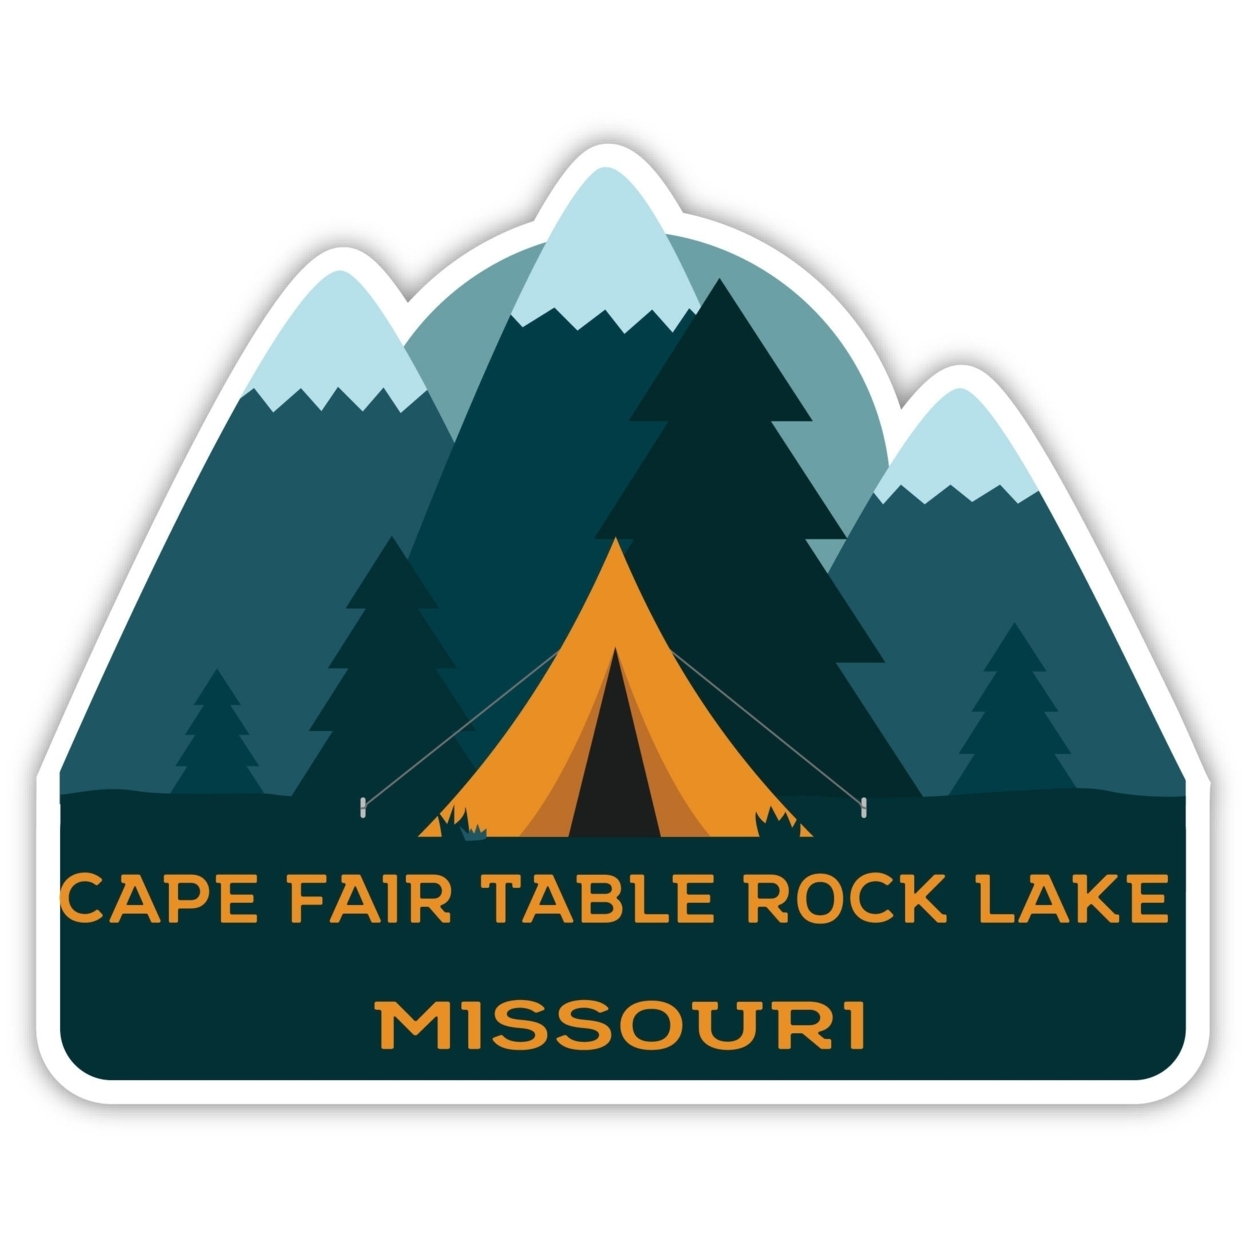 Cape Fair Table Rock Lake Missouri Souvenir Decorative Stickers (Choose Theme And Size) - Single Unit, 8-Inch, Tent